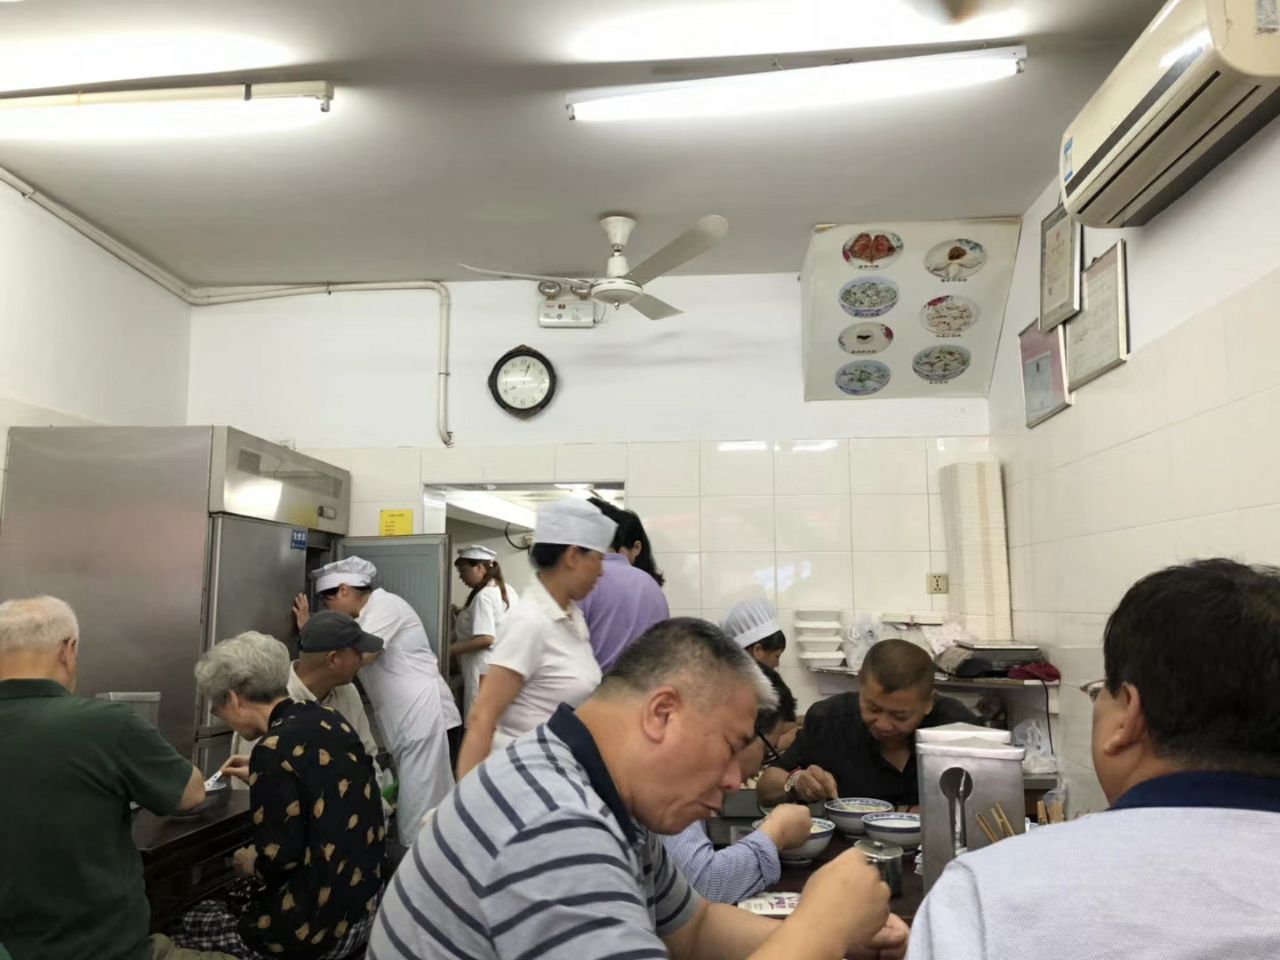 2022老上海弄堂馄饨铺美食餐厅,盛兴百年老店，开了很多年的...【去哪儿攻略】